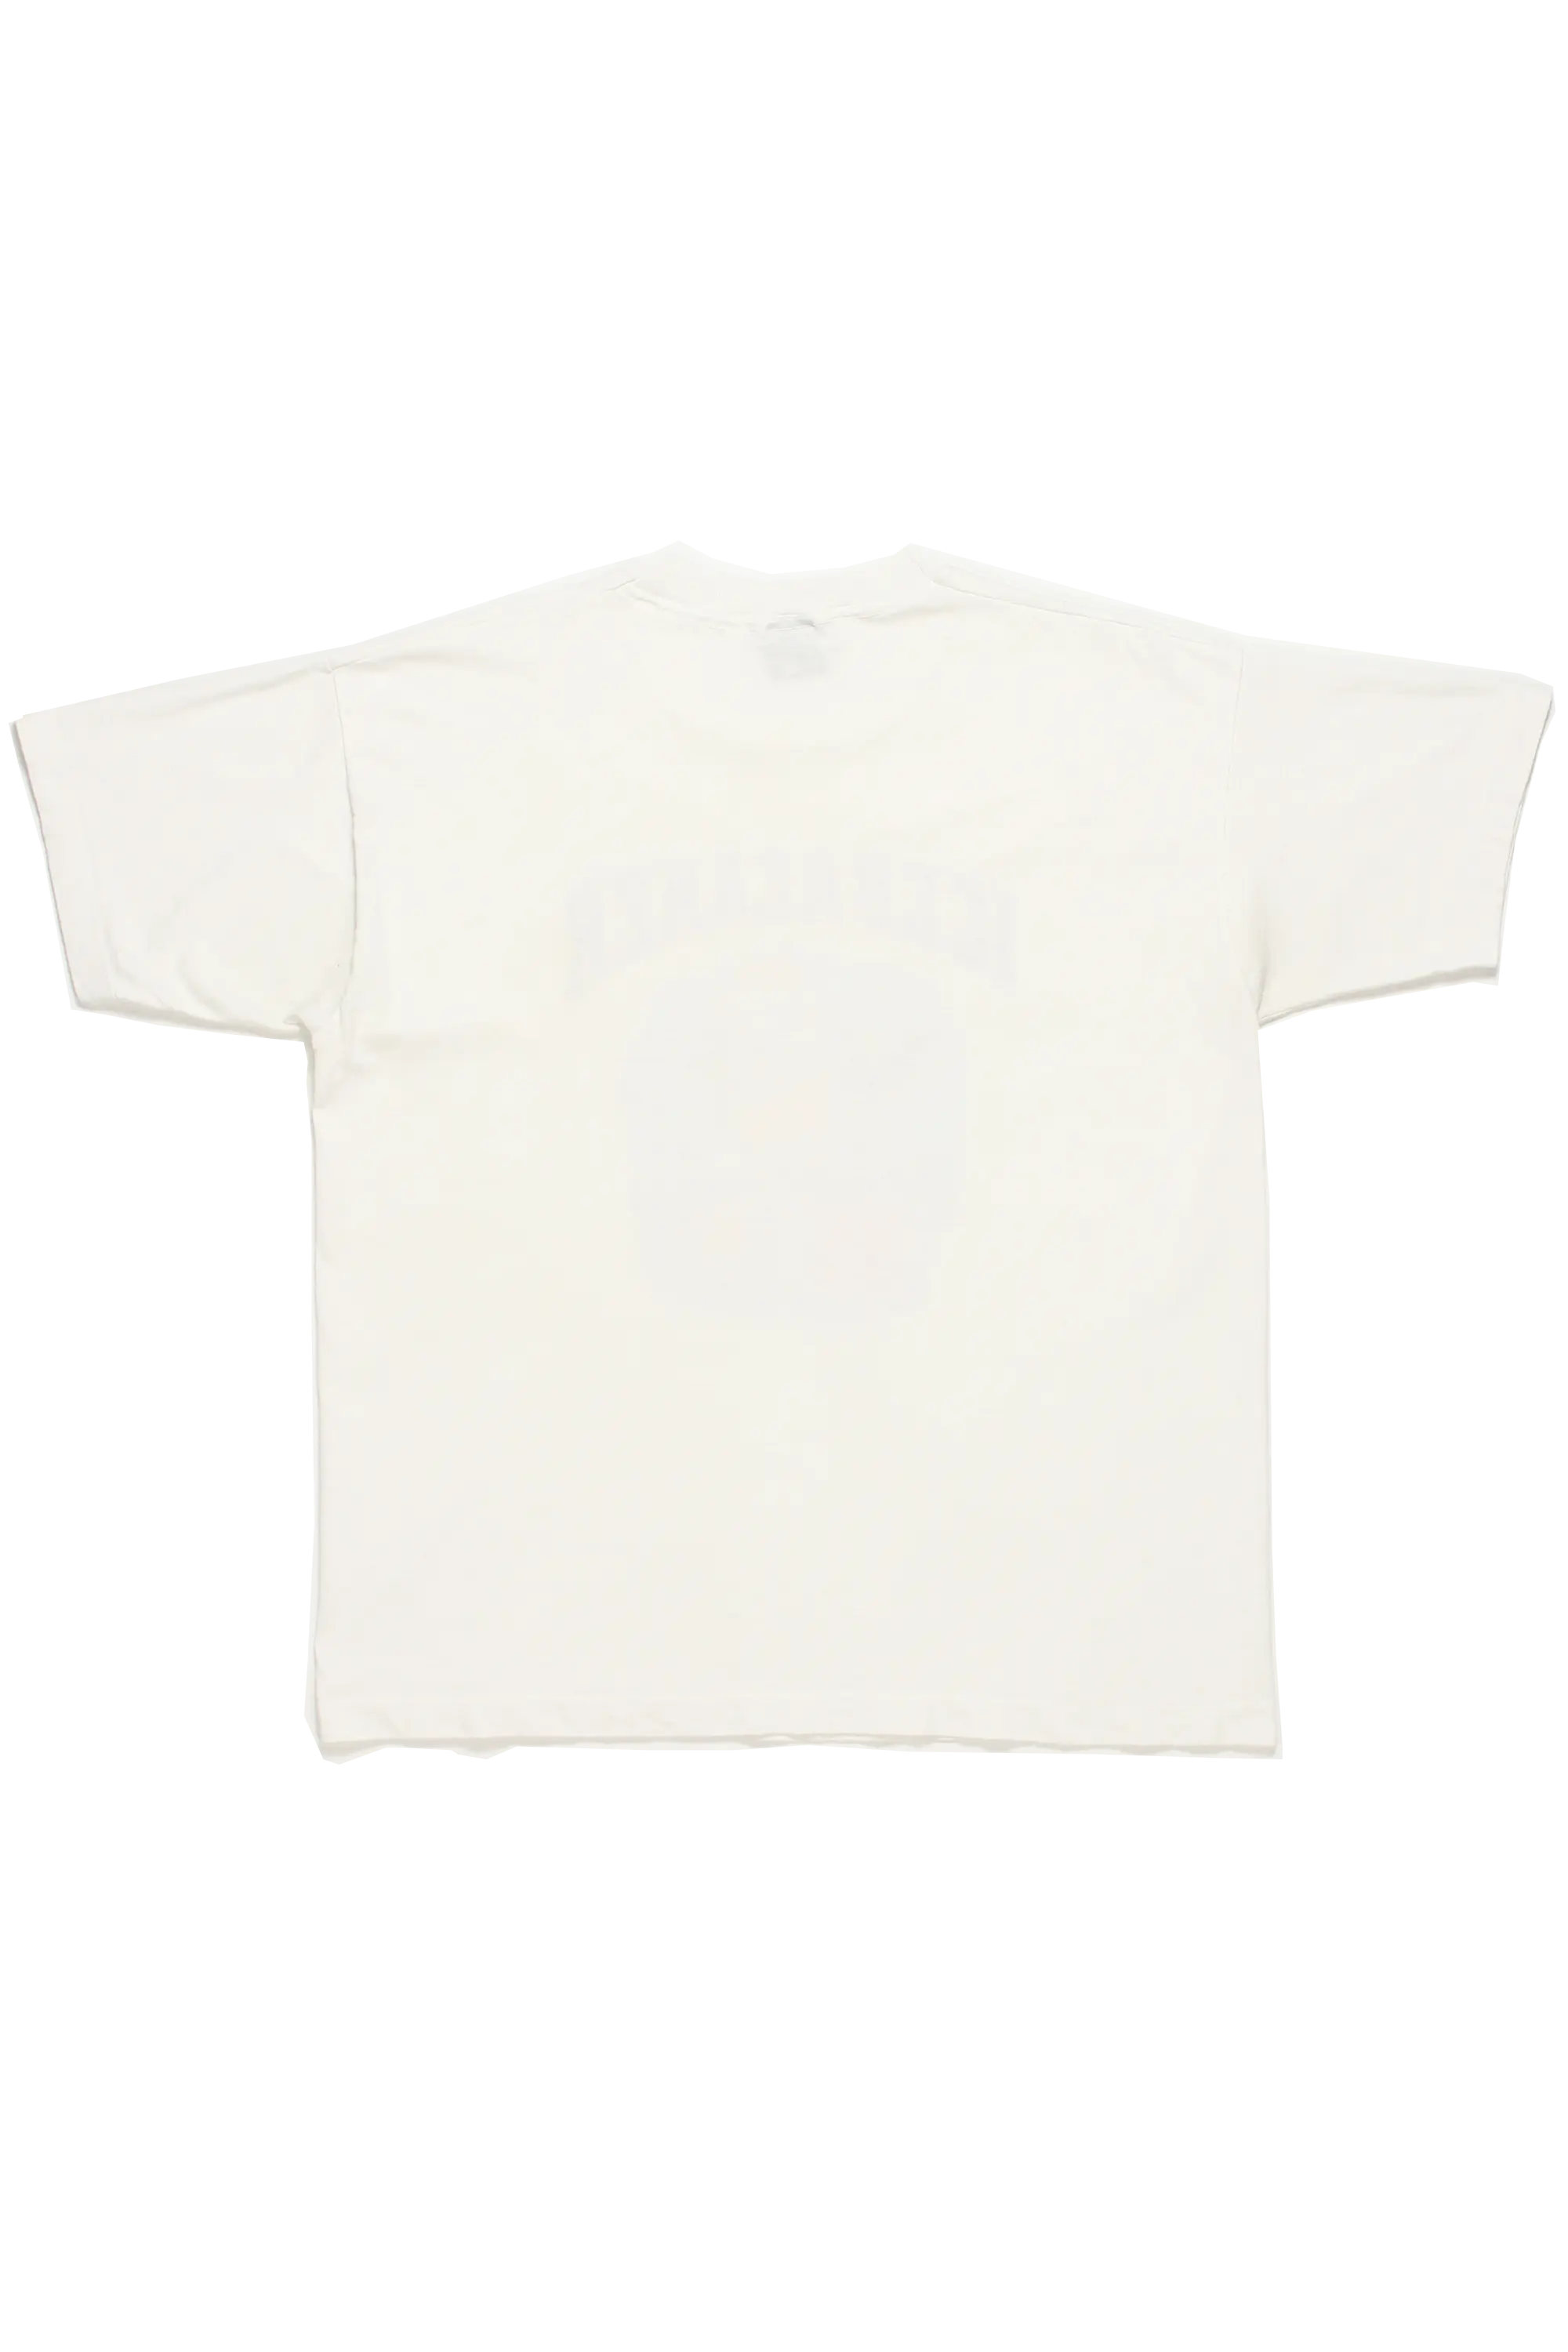 Icebreaker Police T-Shirt